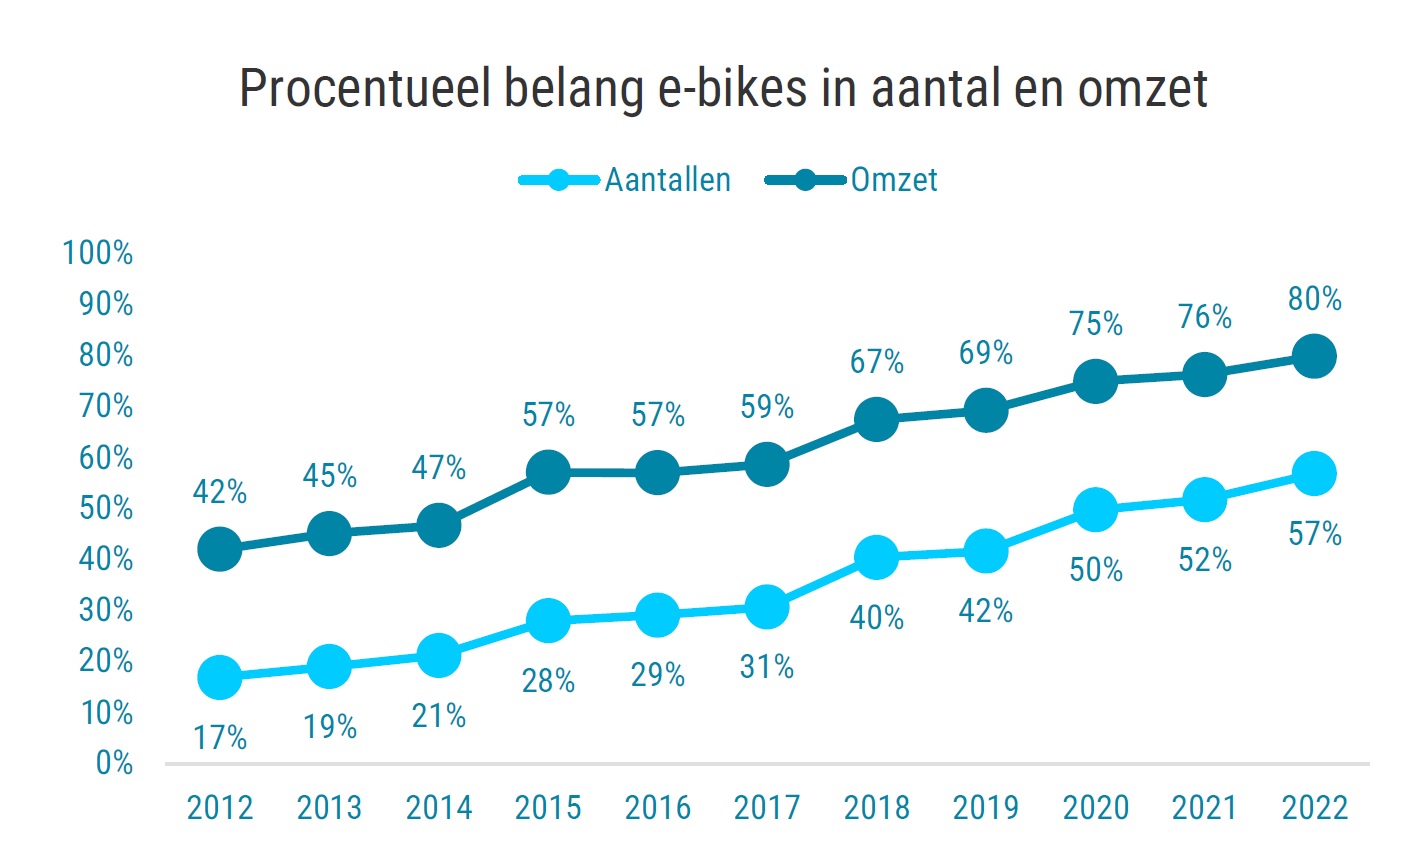  Grafiek: procentueel belang e-bikes in aantal en omzet 